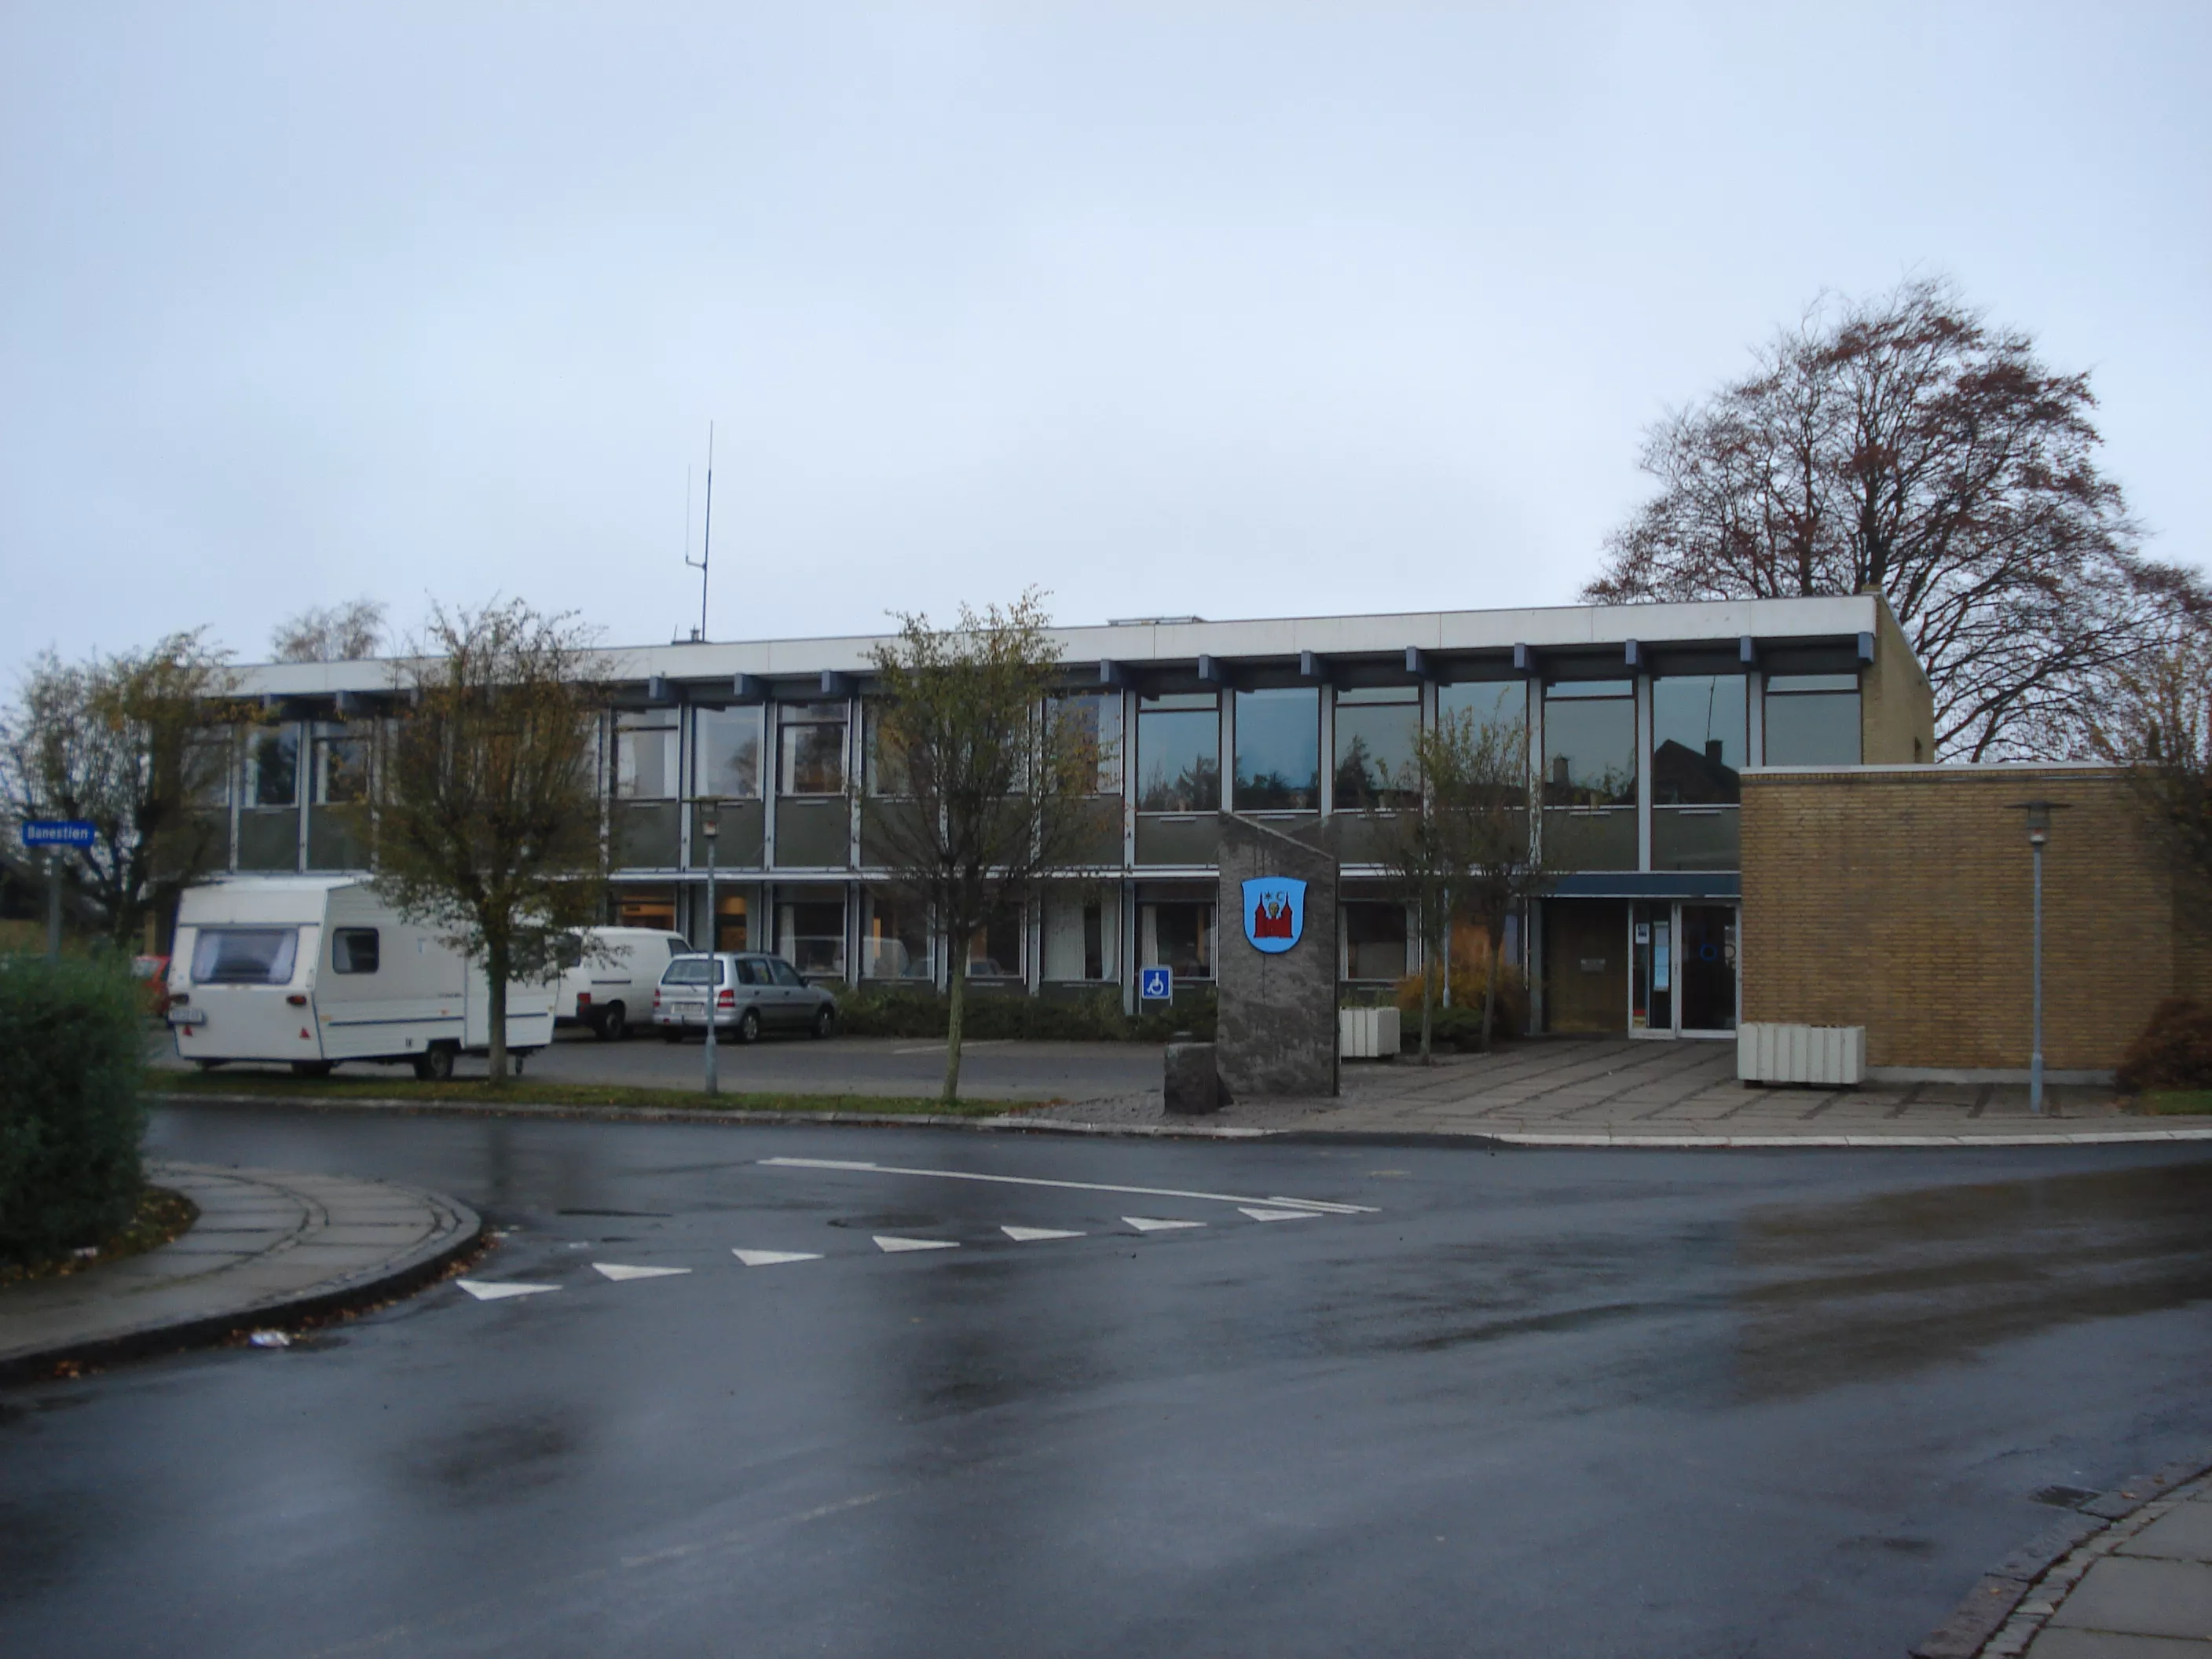 Billede af Ørbæk Station, som er nedrevet og kommunekontoret opført på stedet.